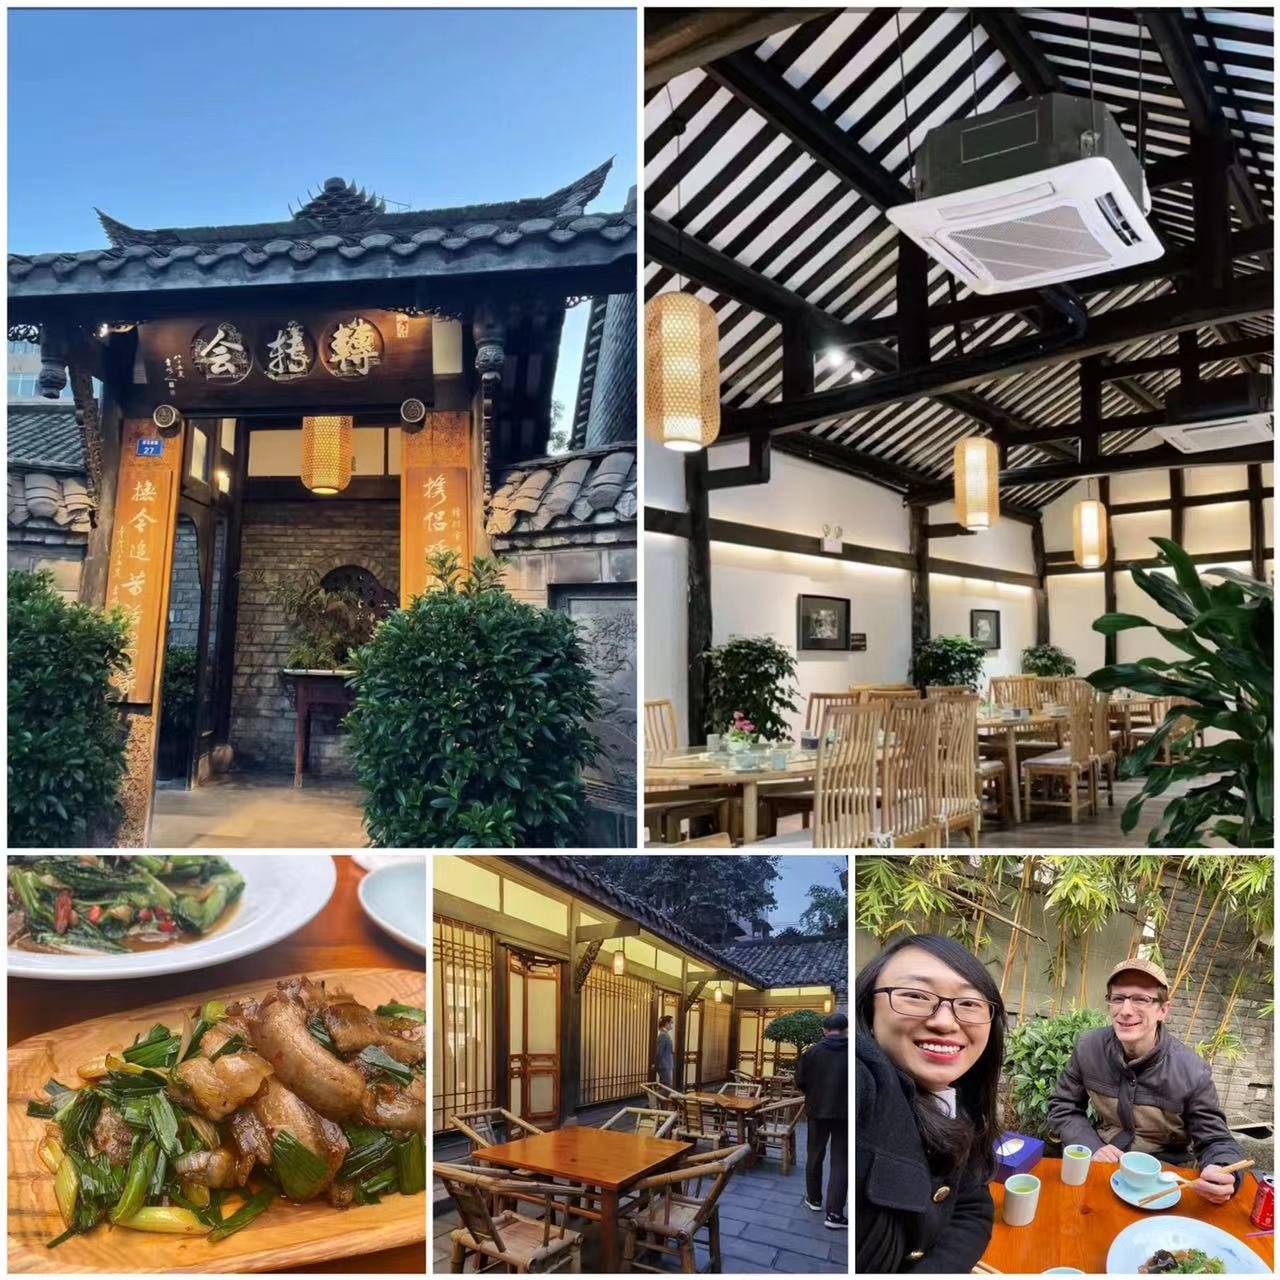 Ashley Huang's favourite restaurant in China: The 四川 [Sìchuān] restaurant in 成都 [Chéngdū], 转转会 [Zhuǎnzhuǎnhuì].